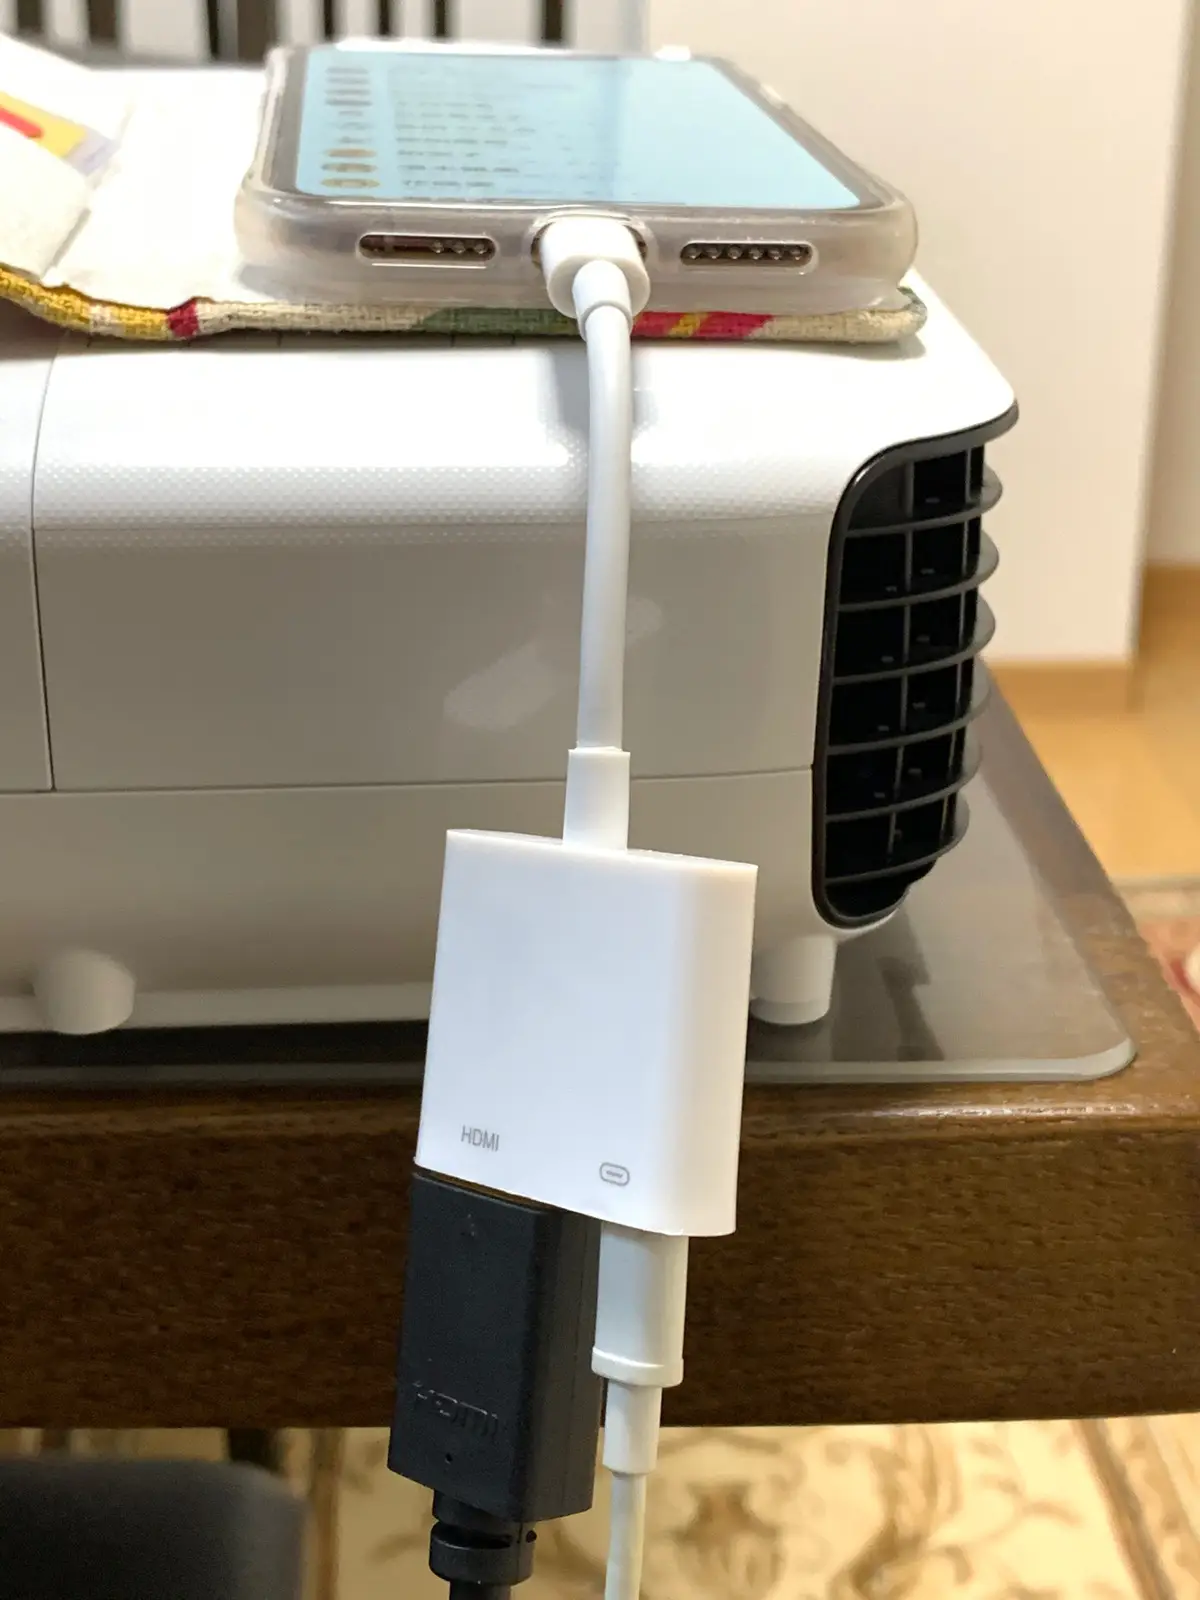 Lightning Digital Avアダプタ Iphoneからhdmiケーブルでプロジェクターに繋いでも映像でないときの解決方法は給電 ものくろぼっくす